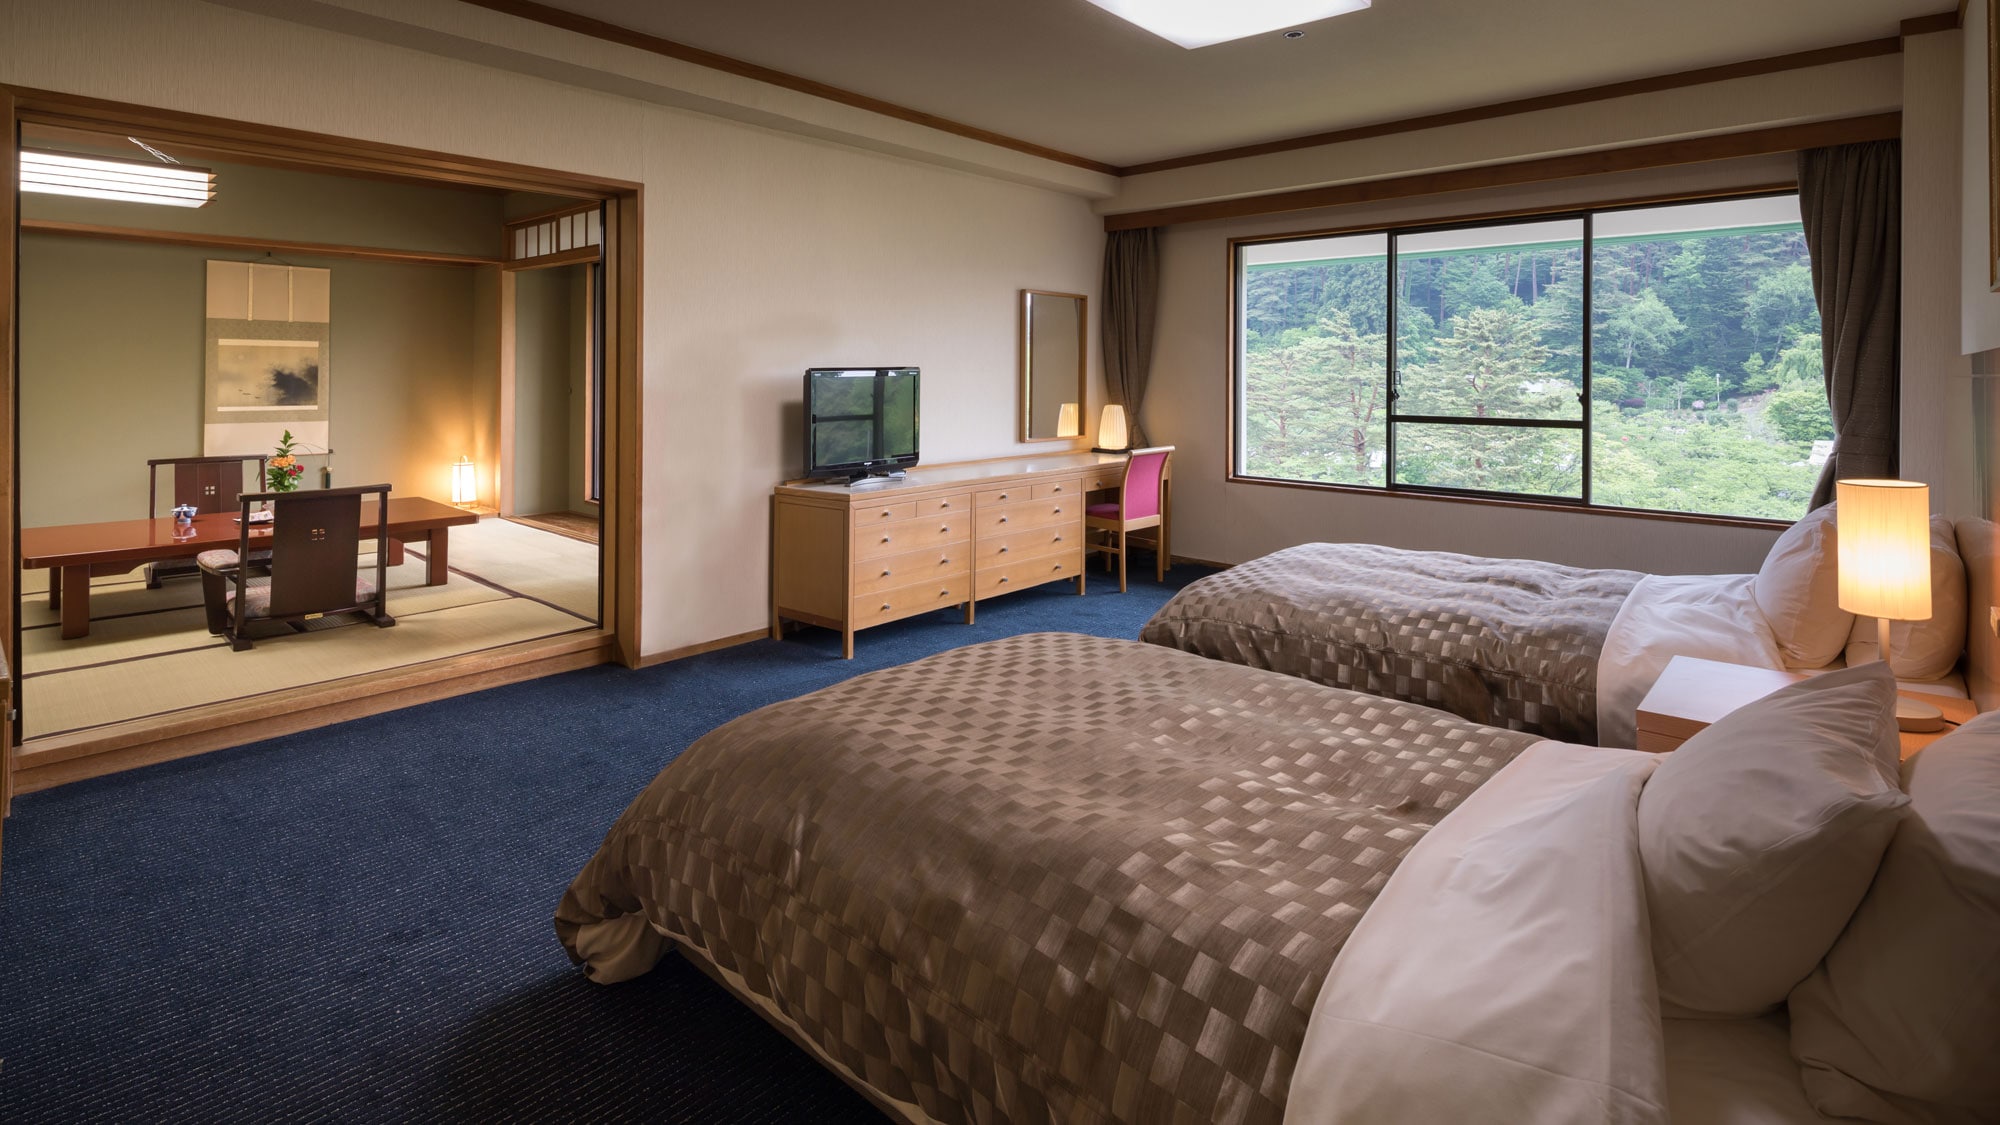 【日西式房间】日式房间12张榻榻米+双床房